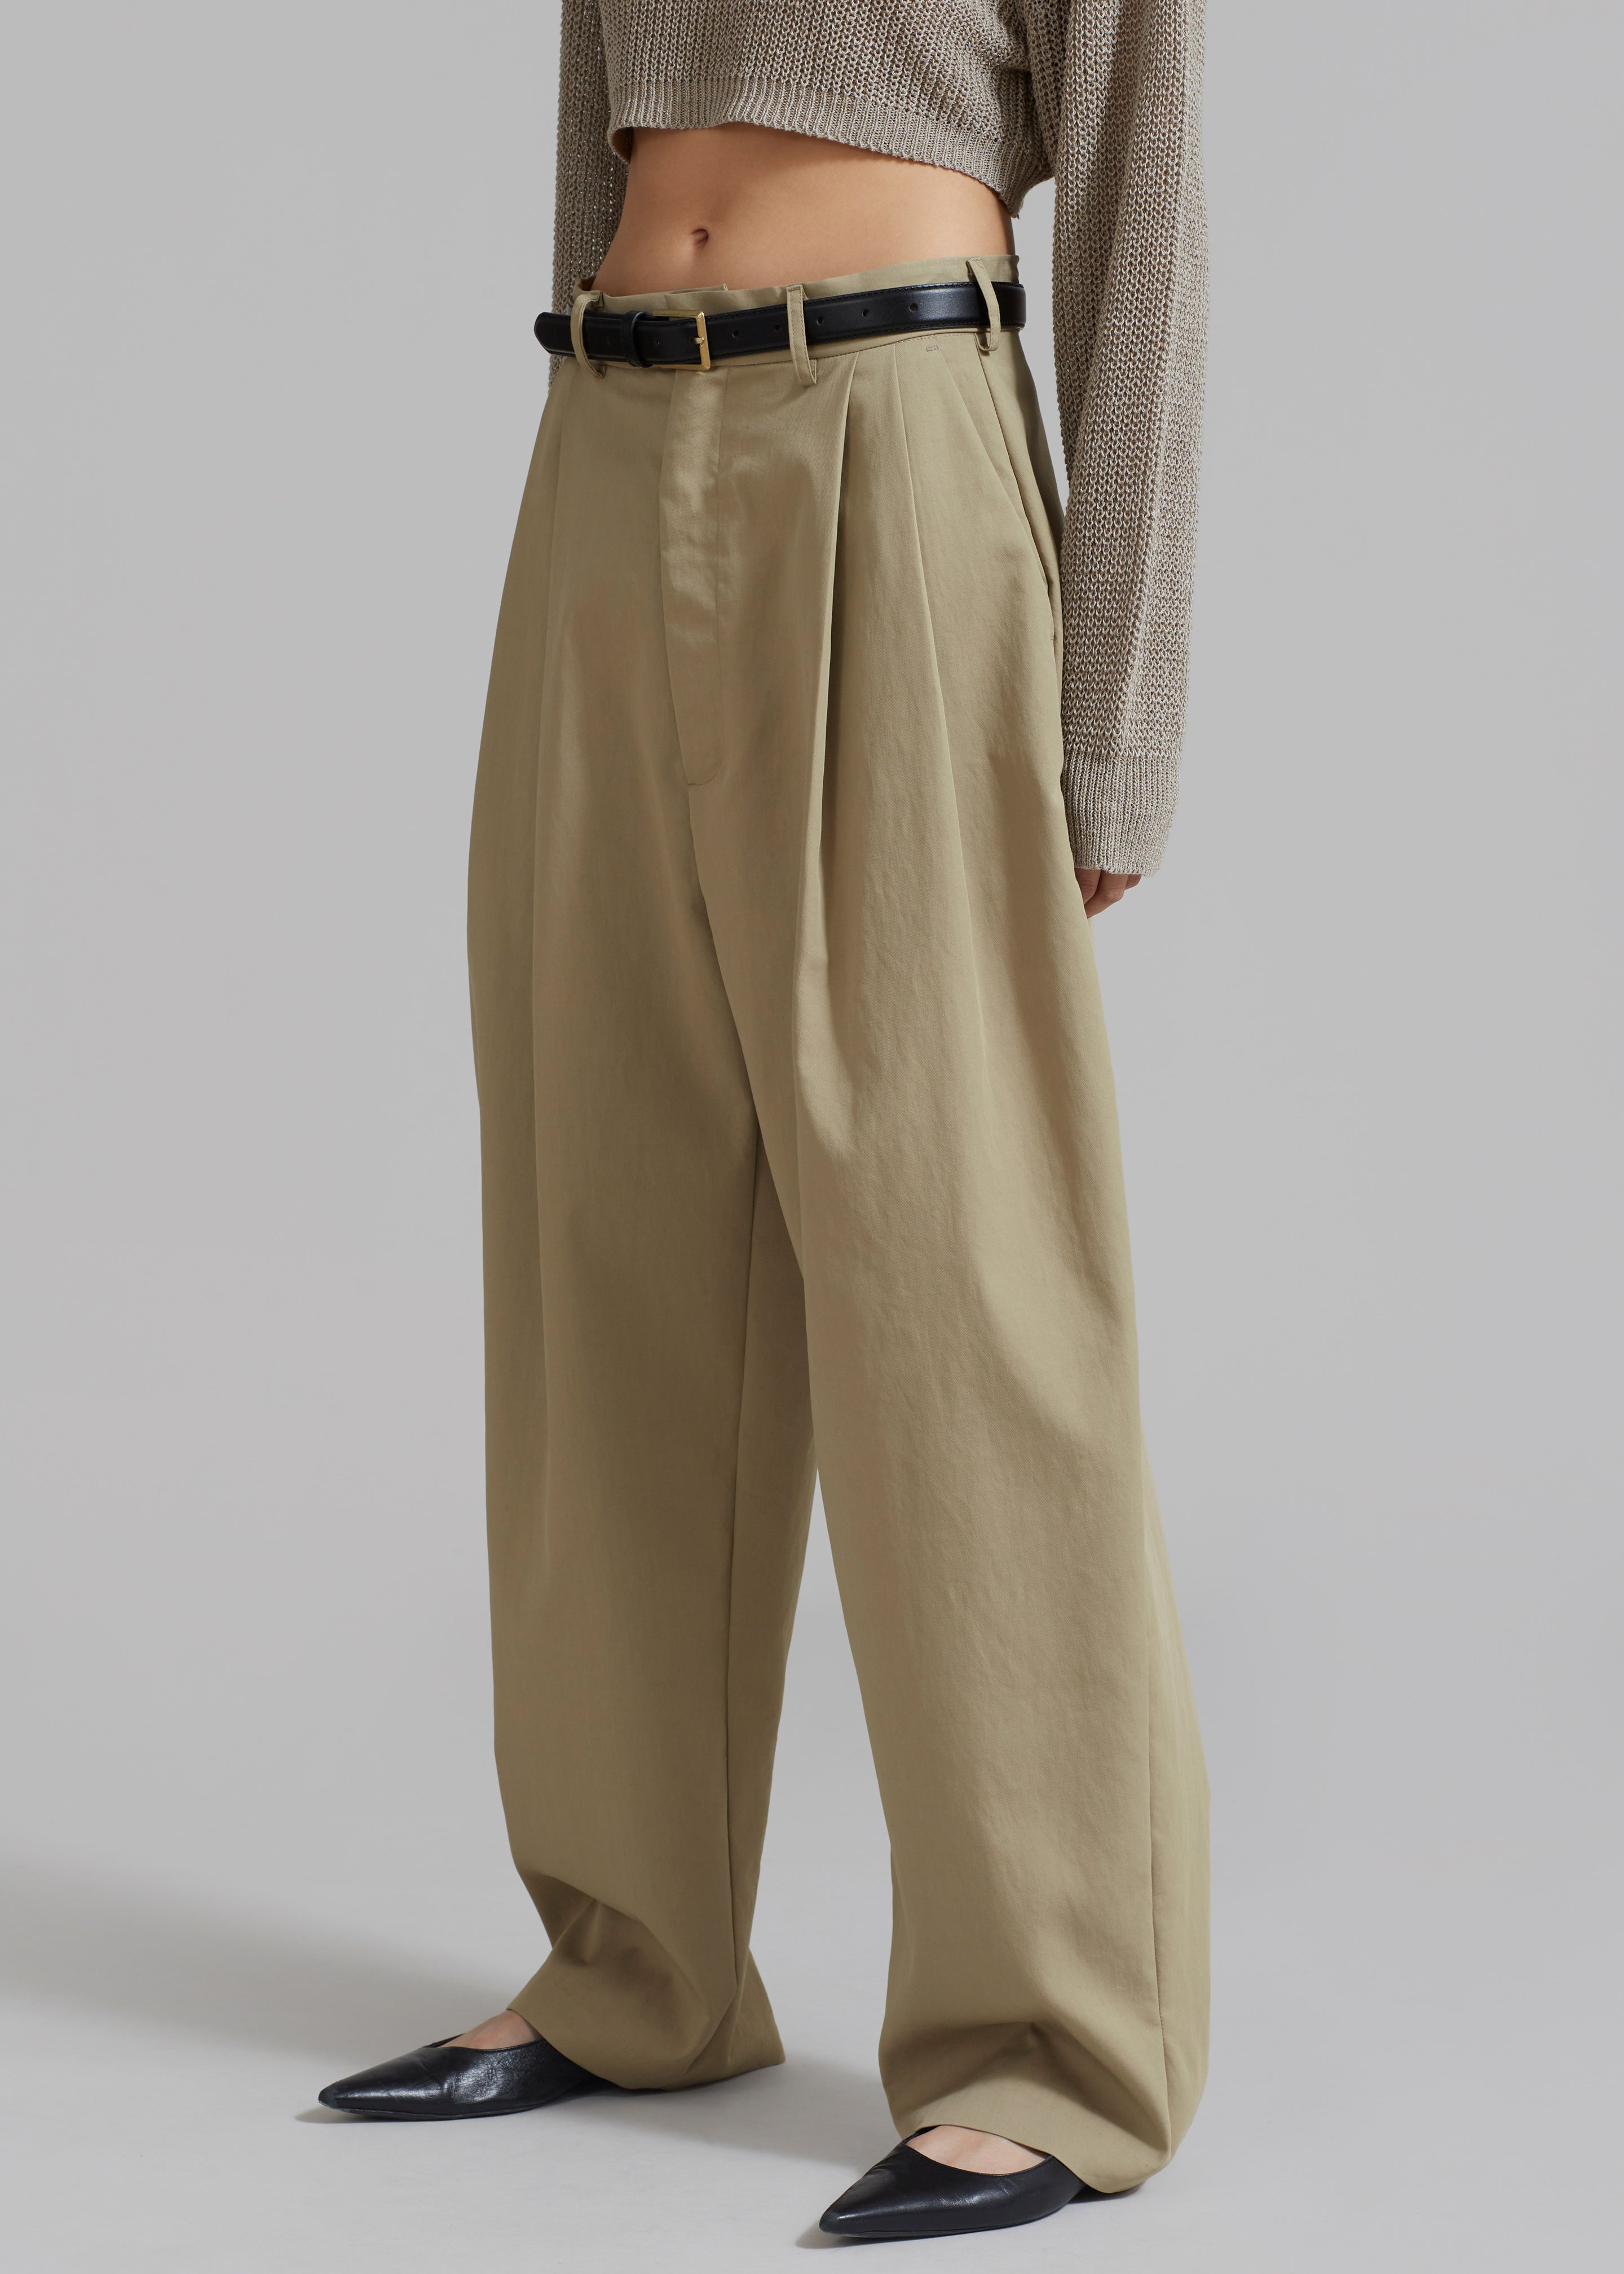 Effie Pleated Pants - Khaki - 1